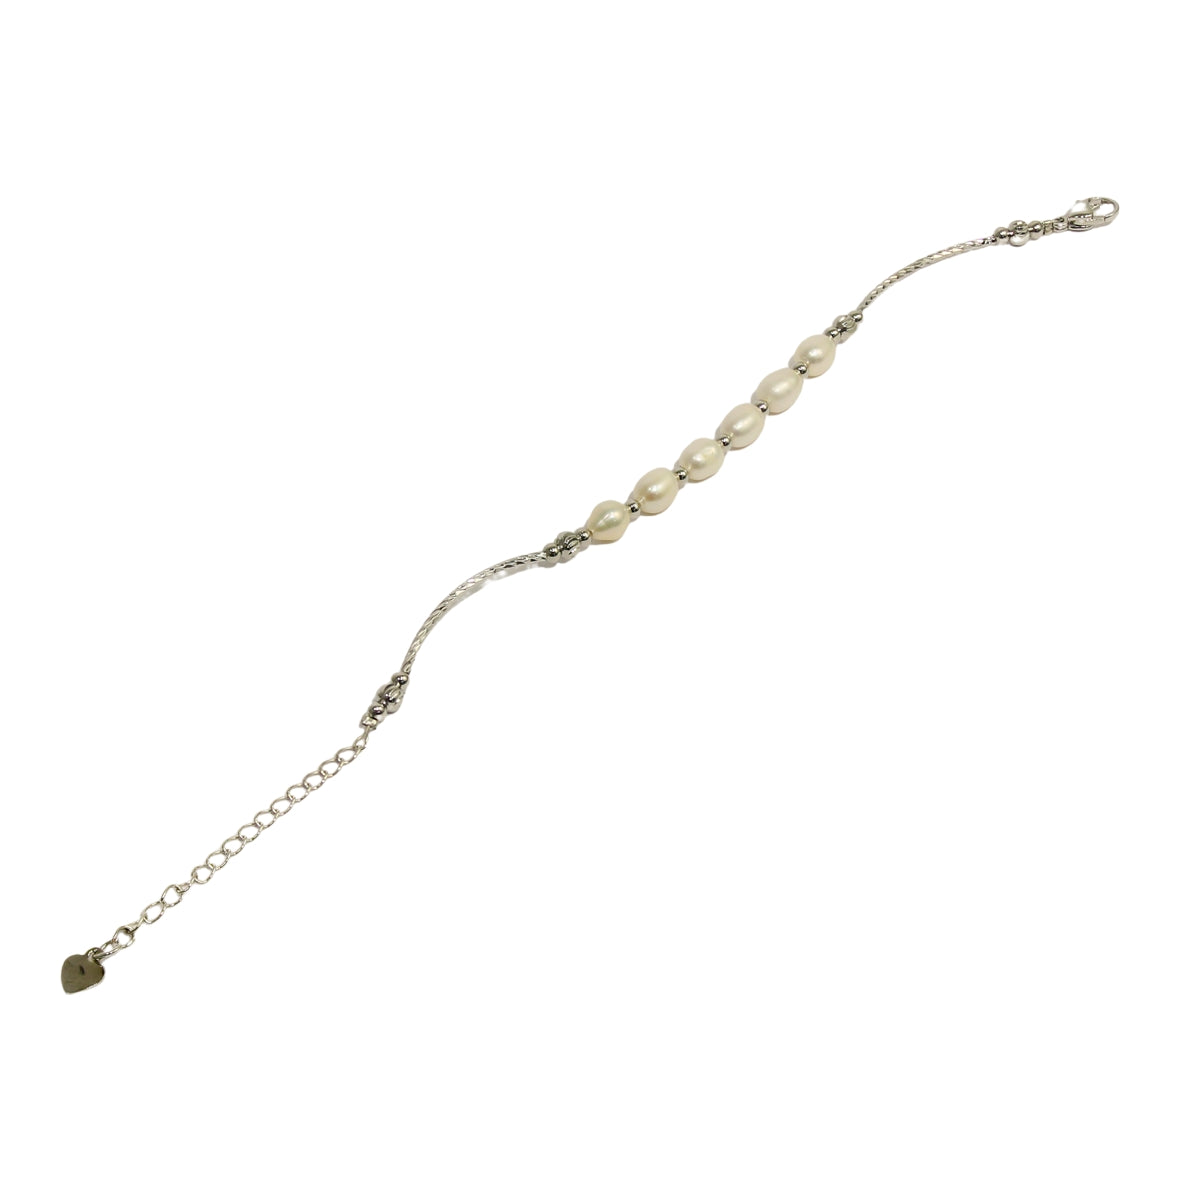 White Designer Heart Hanging pearl bracelets for women girls stylish bracelet-Maya Bazaar